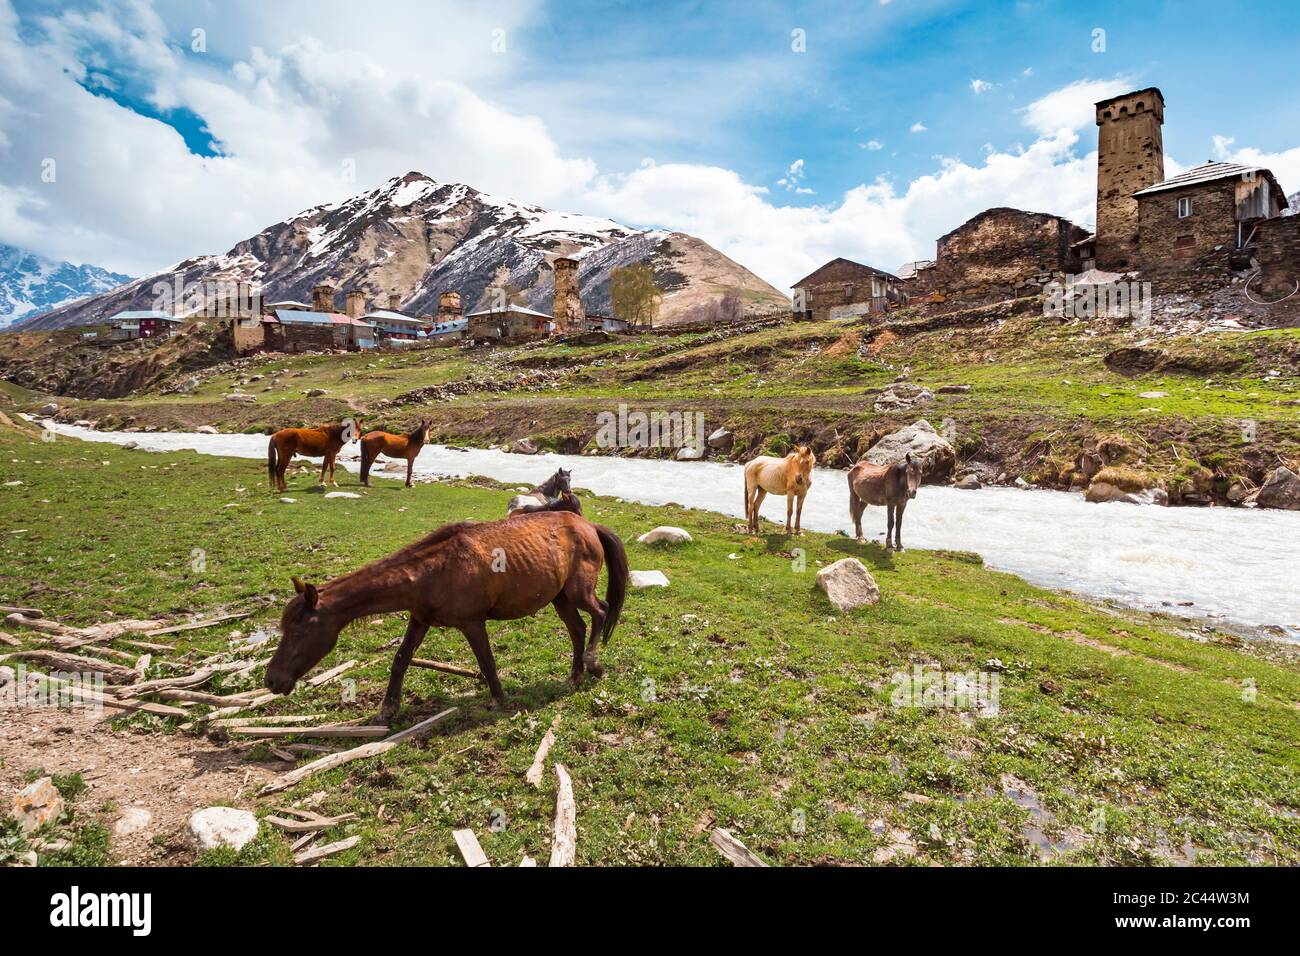 Georgia, Svaneti, Ushguli, Horses grazing along bank of Enguri River with medieval village in background Stock Photo